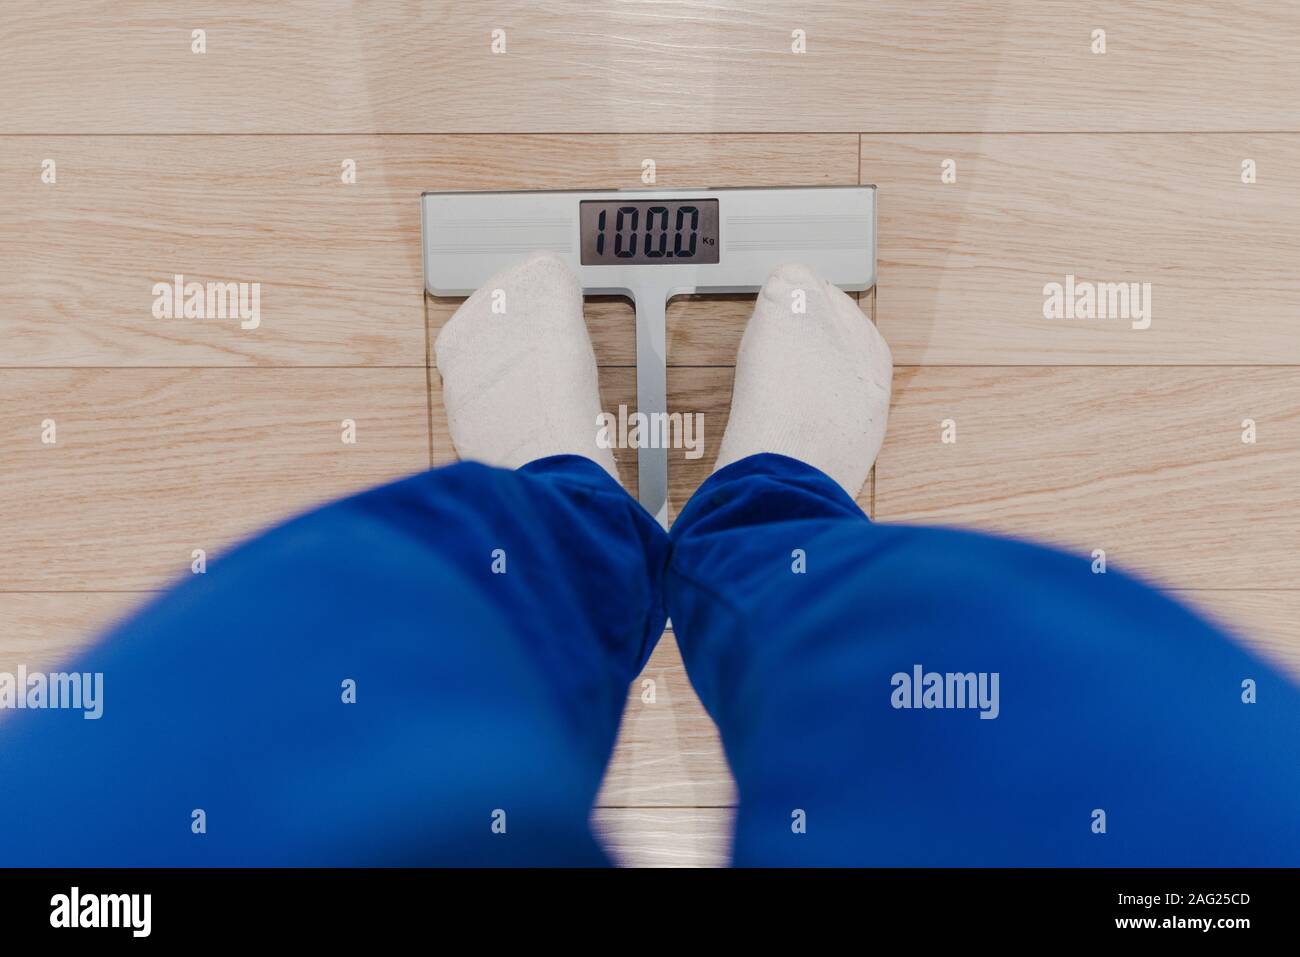 Un homme pesant lui-même sur une échelle numérique habillé en pyjama bleu et blanc chaussettes. Problème de l'embonpoint. Concept de régime. Banque D'Images